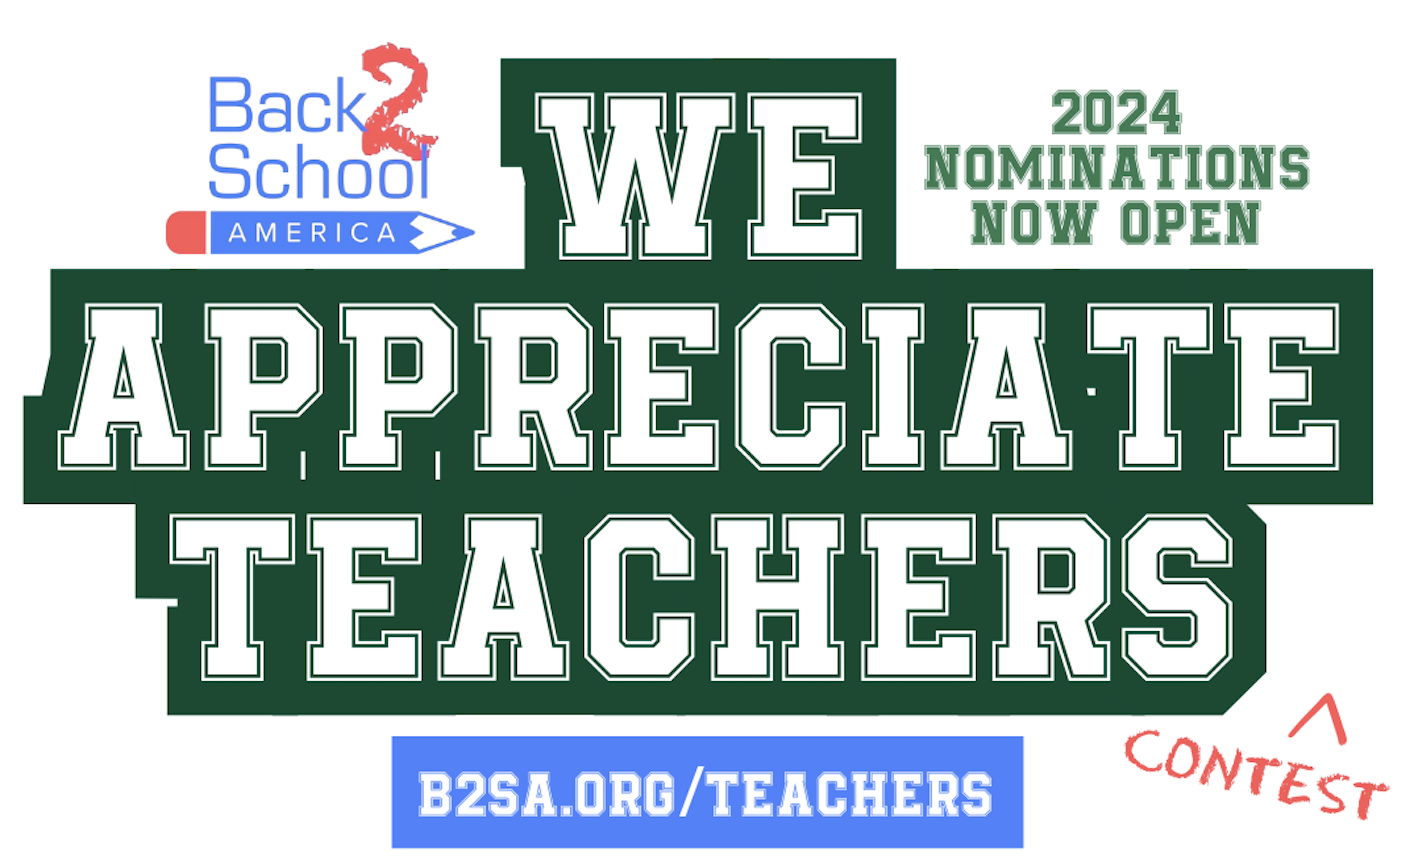 Back 2 School America Launches Annual 'We Appreciate Teachers' Contest Across Illinois 